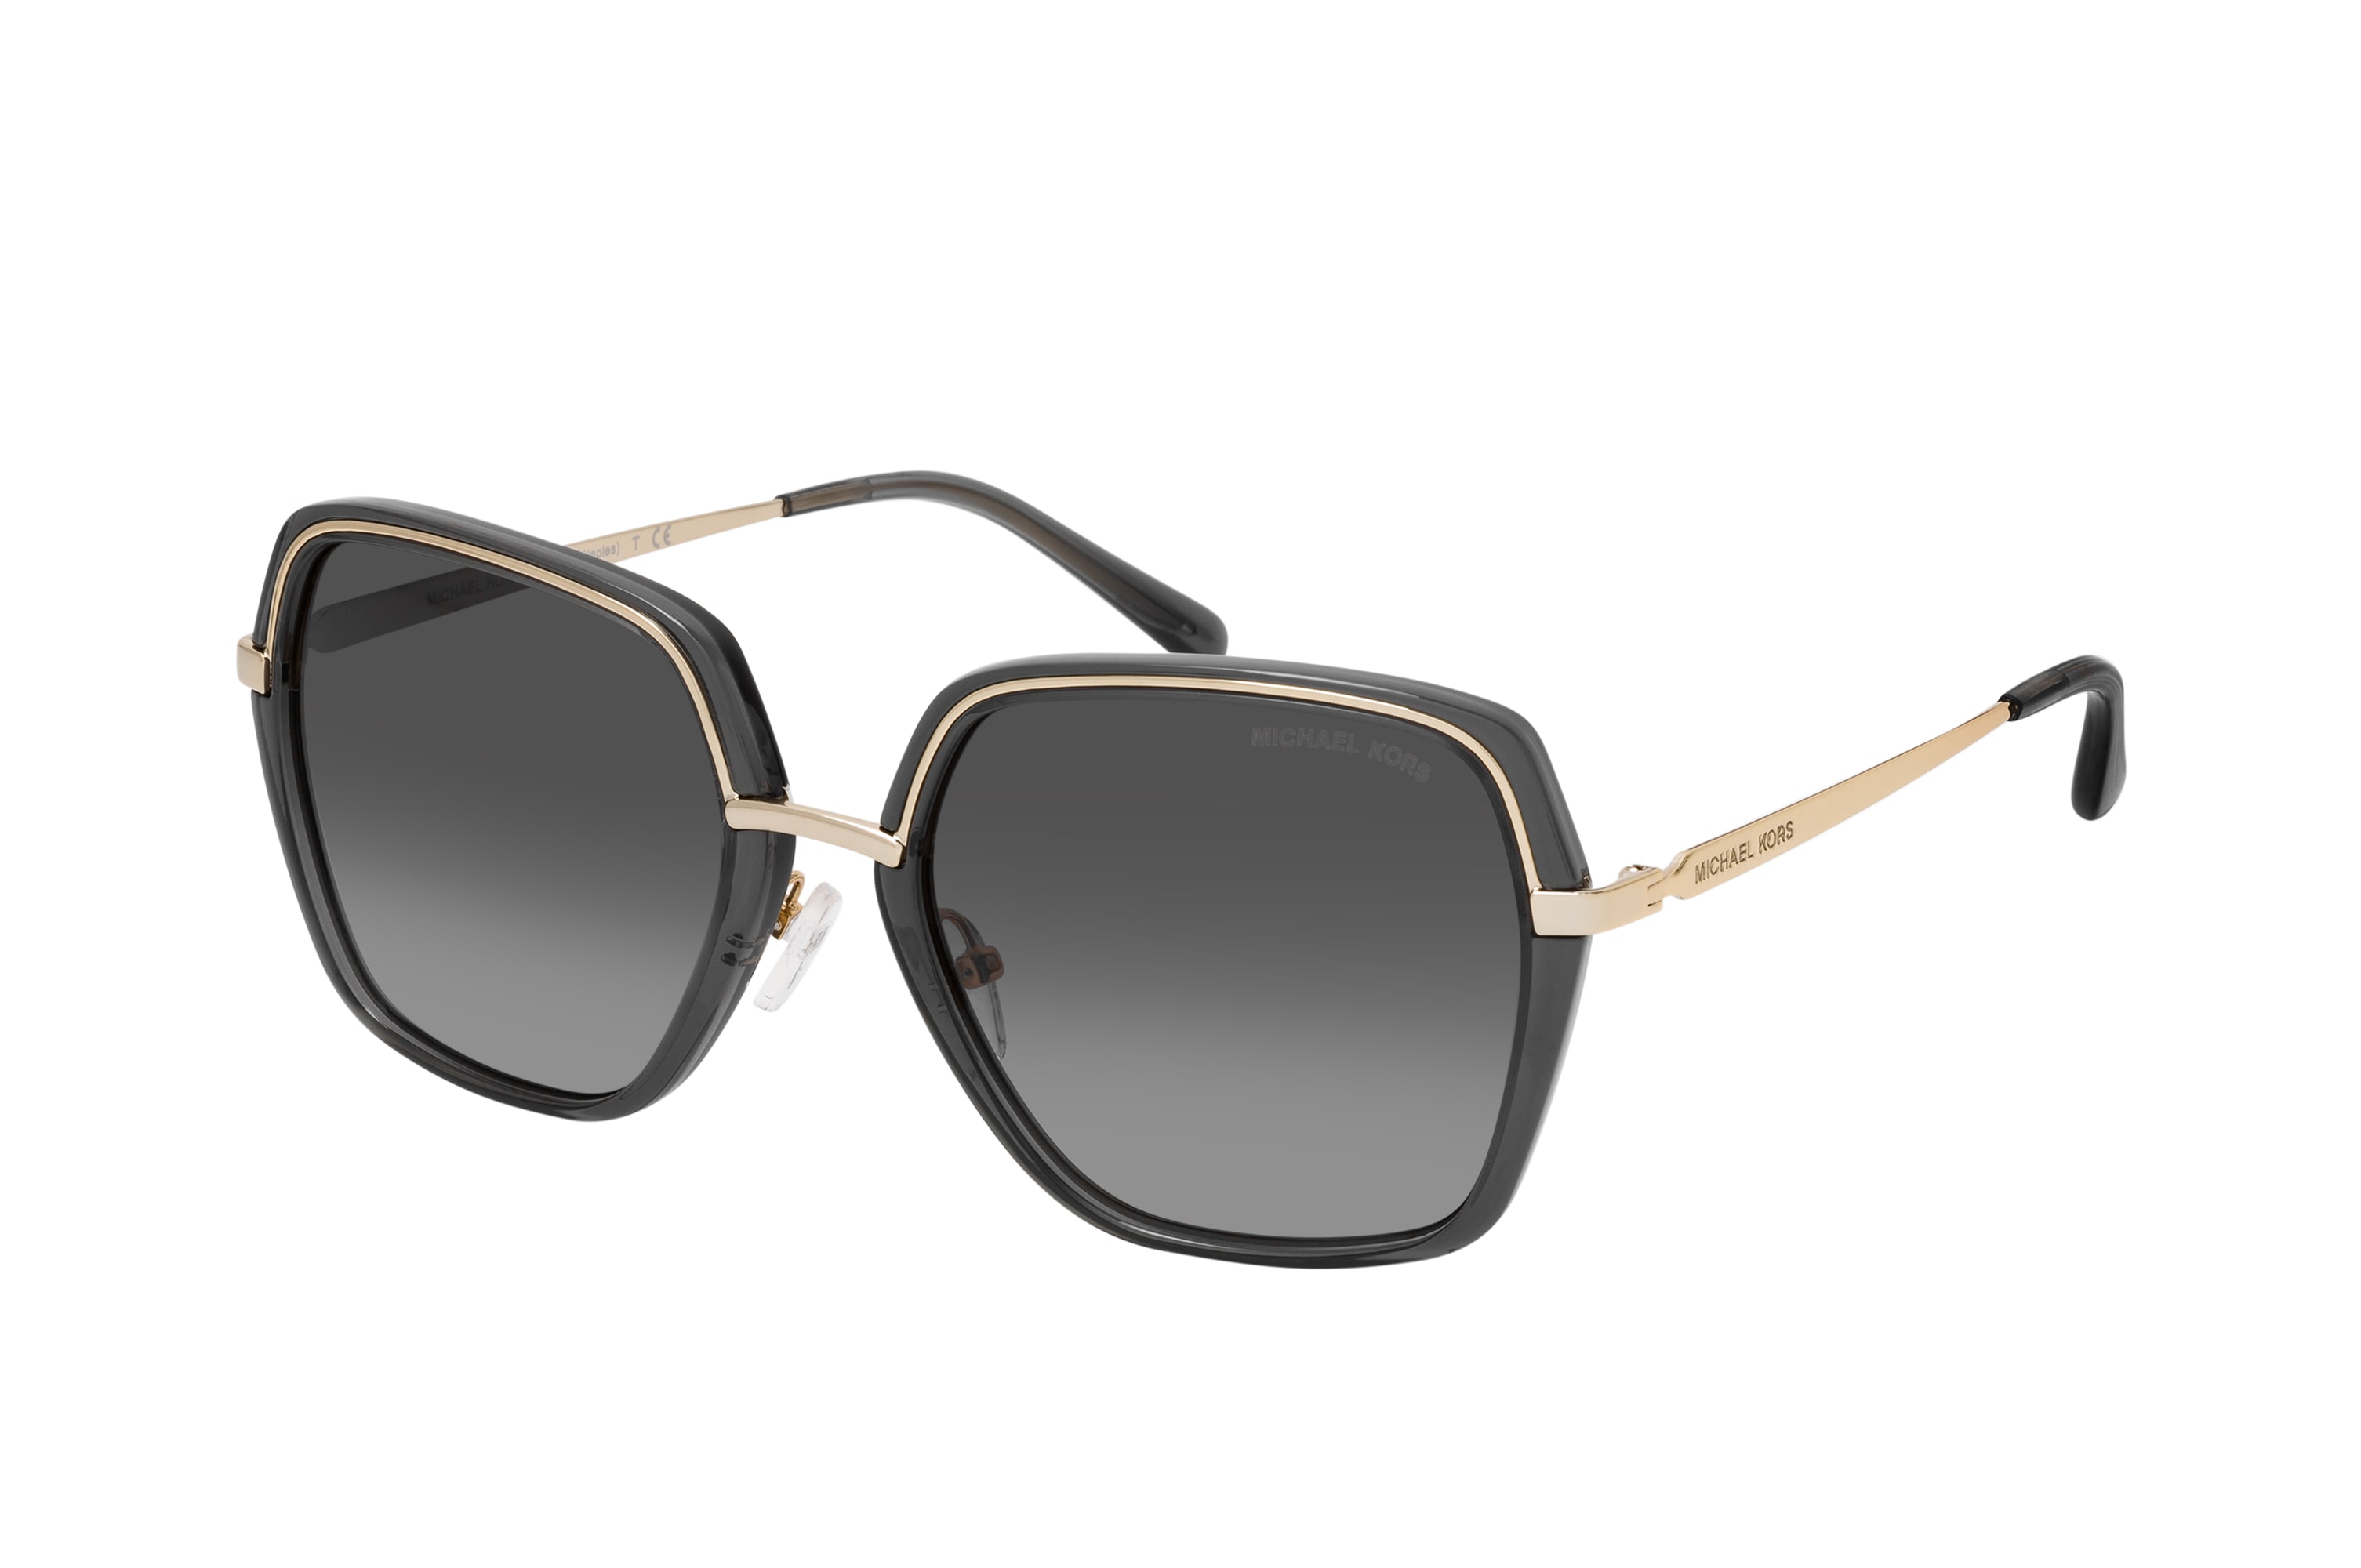 Buy Michael Kors Naples MK 1075 10148G Sunglasses